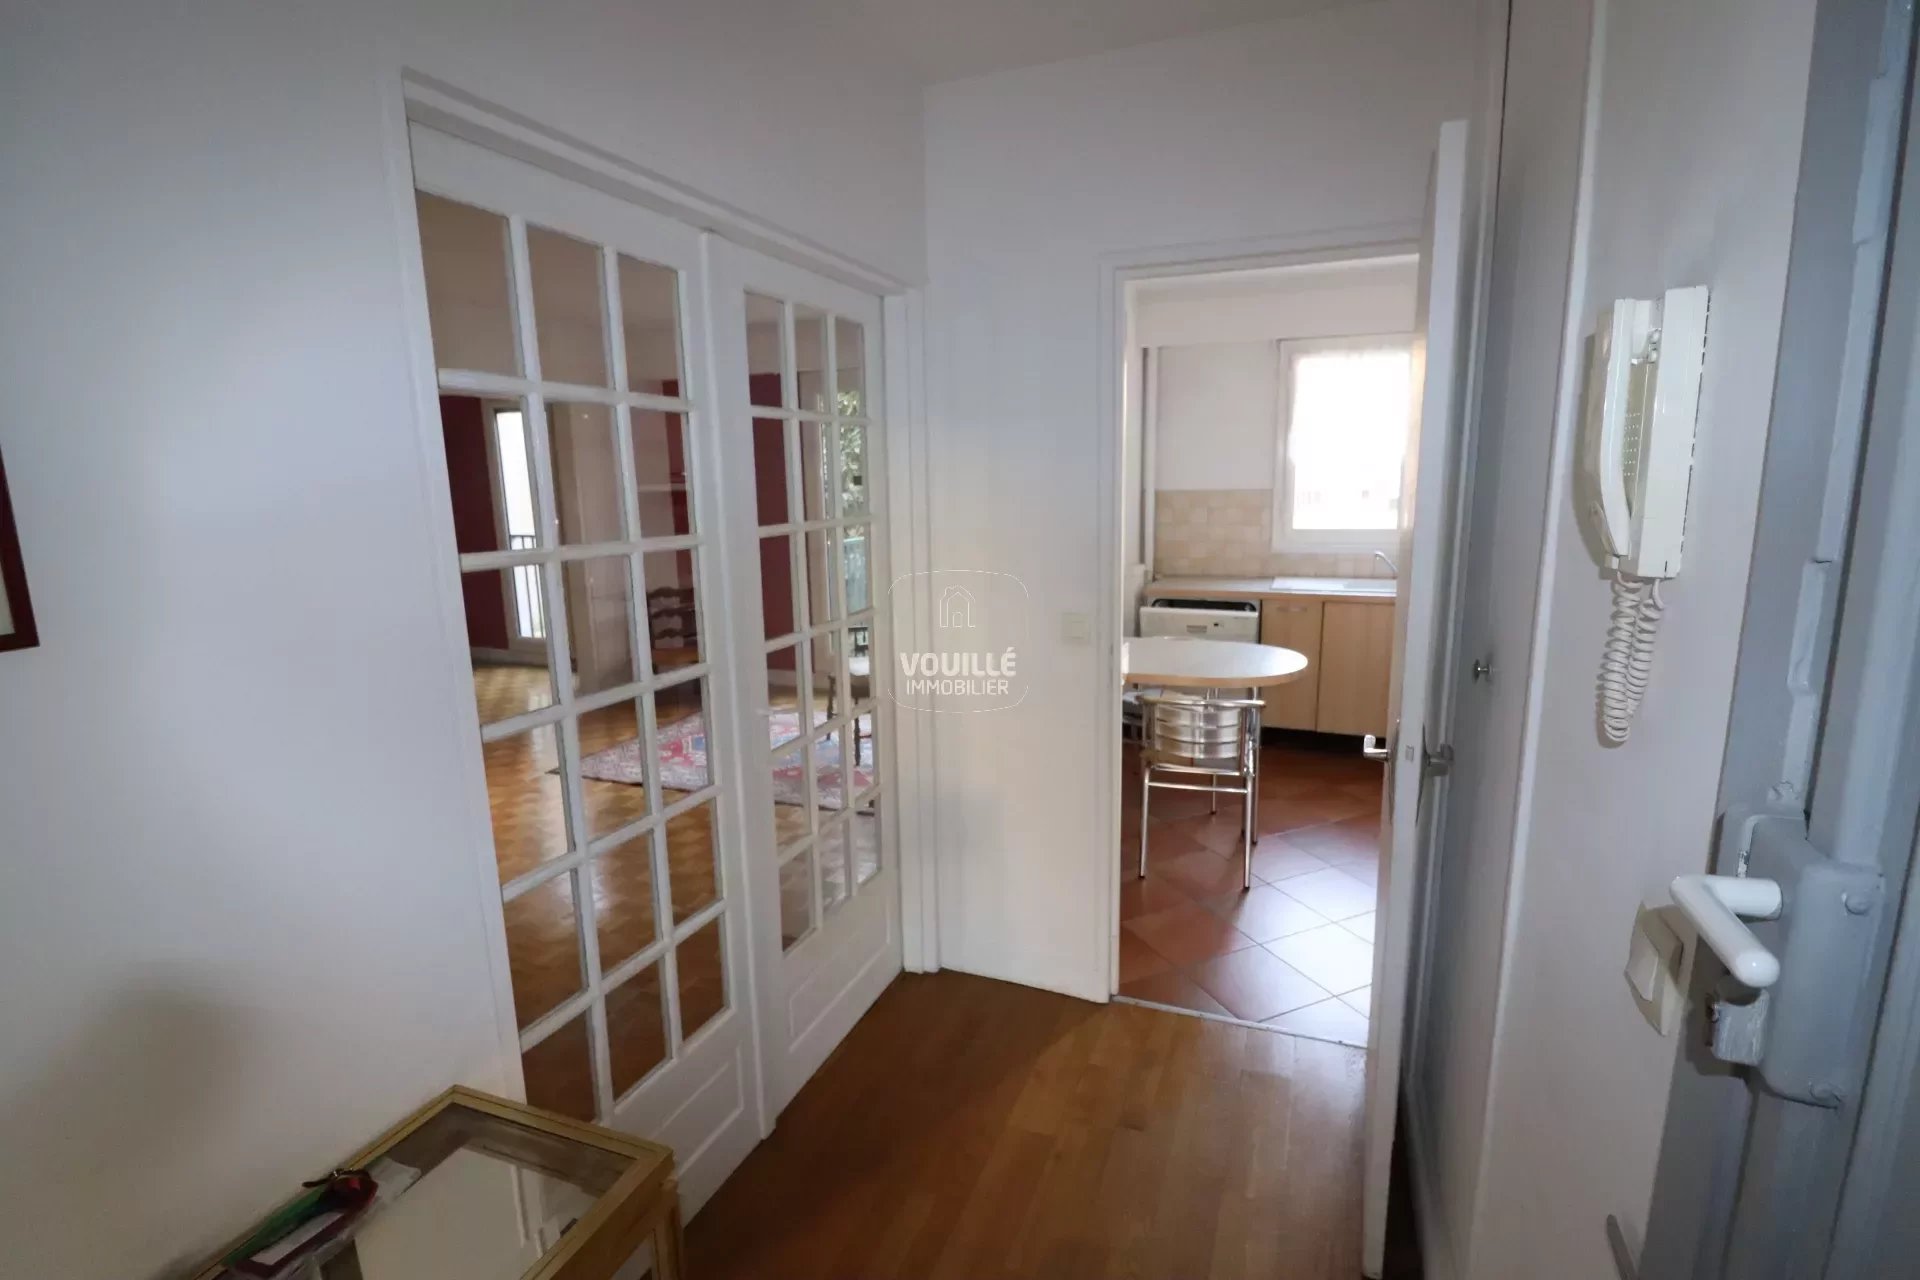 Appartement familial 5 pièces 99,43 m2 - Quartier Georges Brassens - Paris 75015